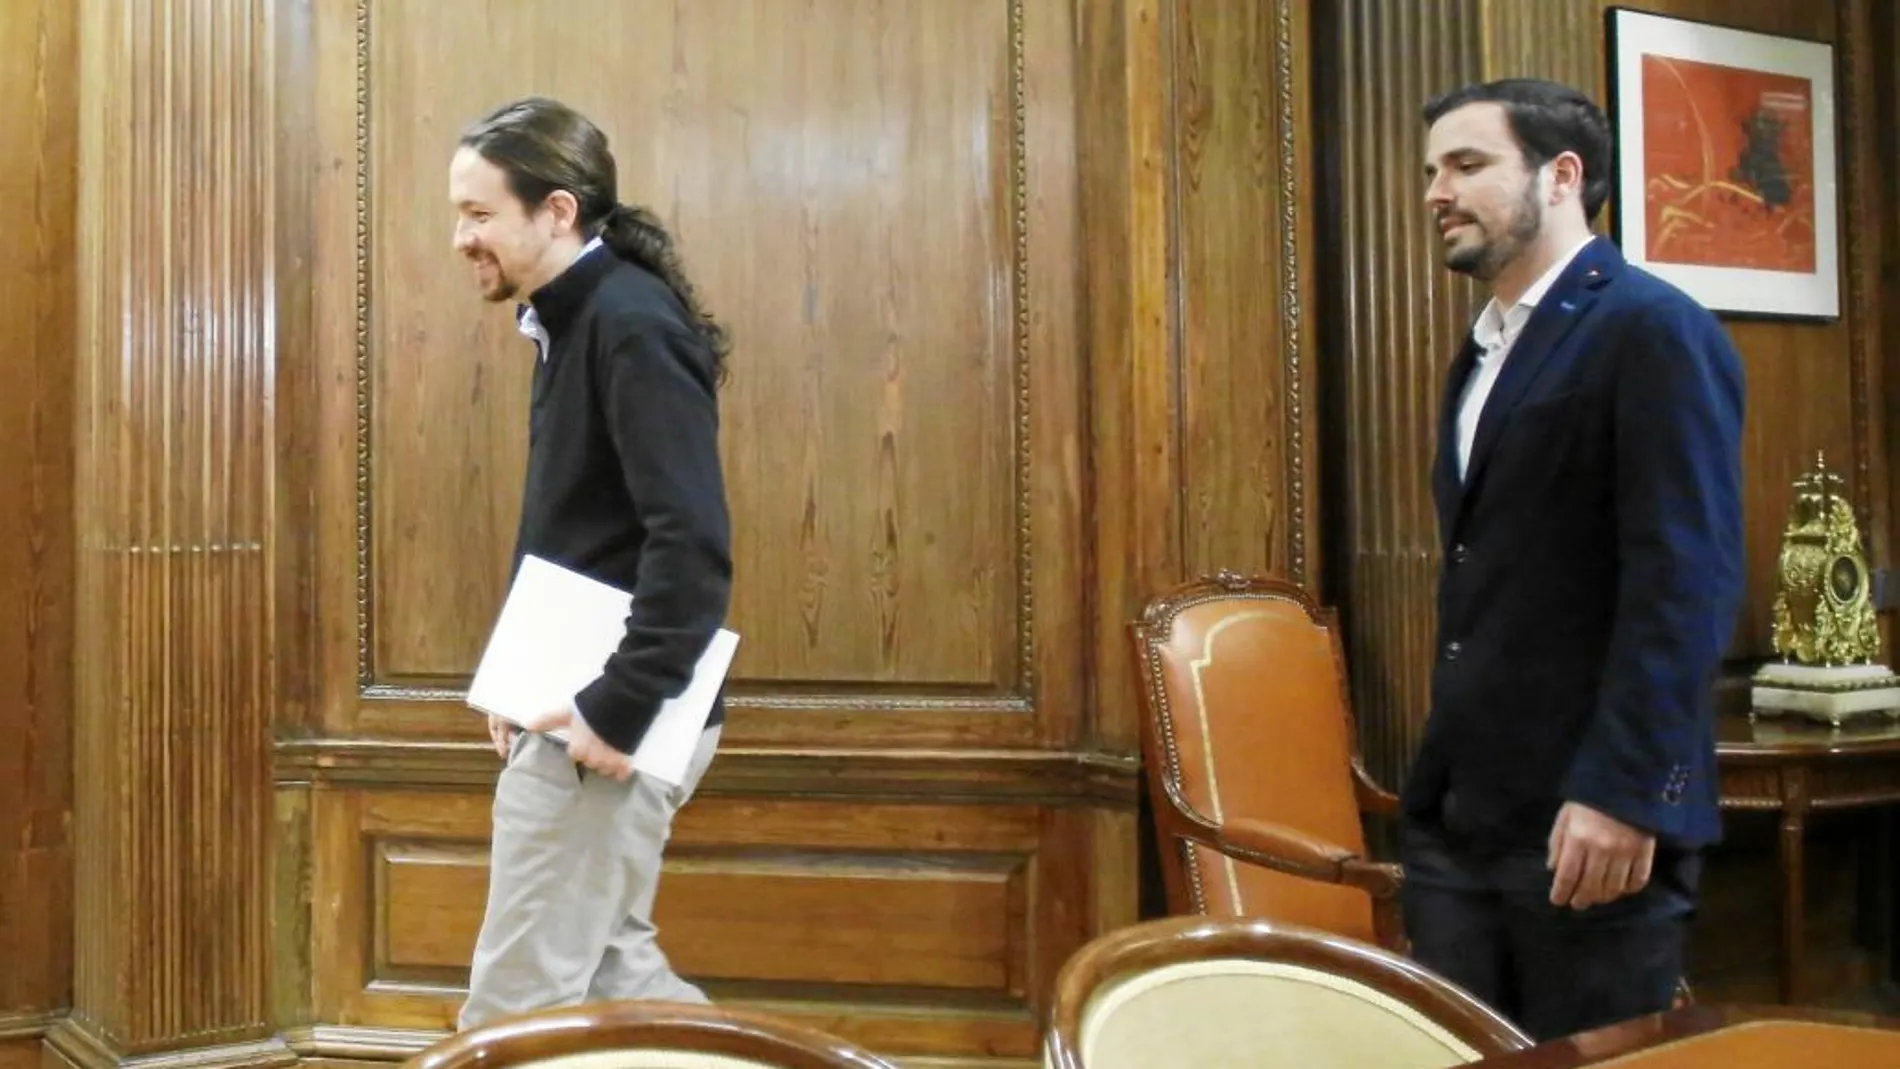 Los candidatos de Podemos, Pablo Iglesias, e Izquierda Unida, Alberto Garzón, durante reunión en el Congreso de los Diputados que tuvo lugar en febrero